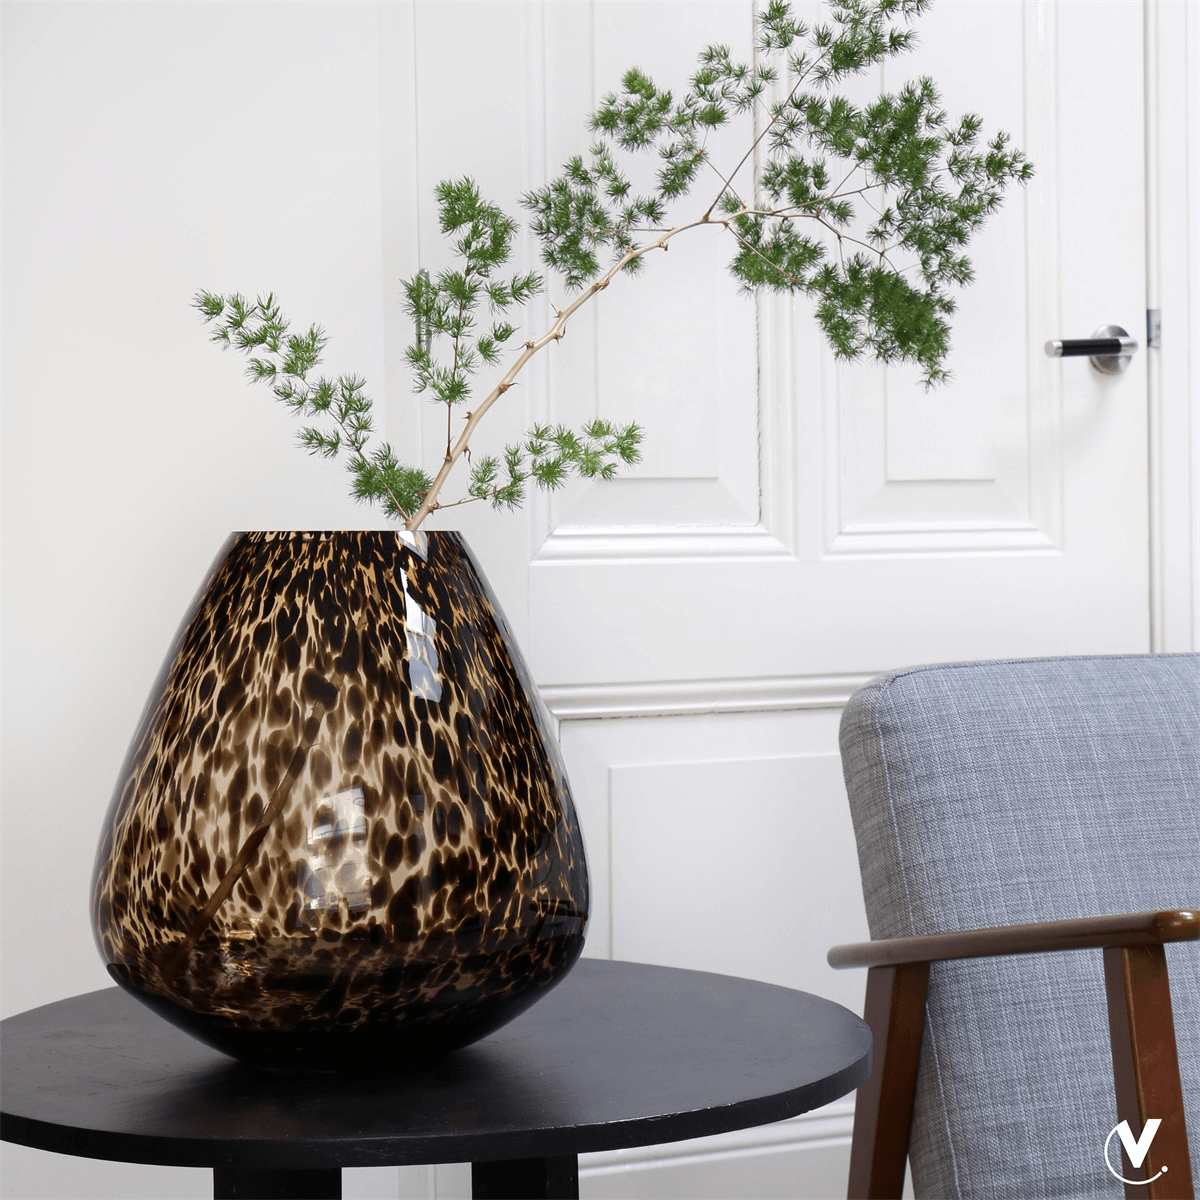 Designer Deko Tasman Geopard Vase Blumenvase Handarbeit - HomeDesign Knaus wir schaffen Inspirationen 